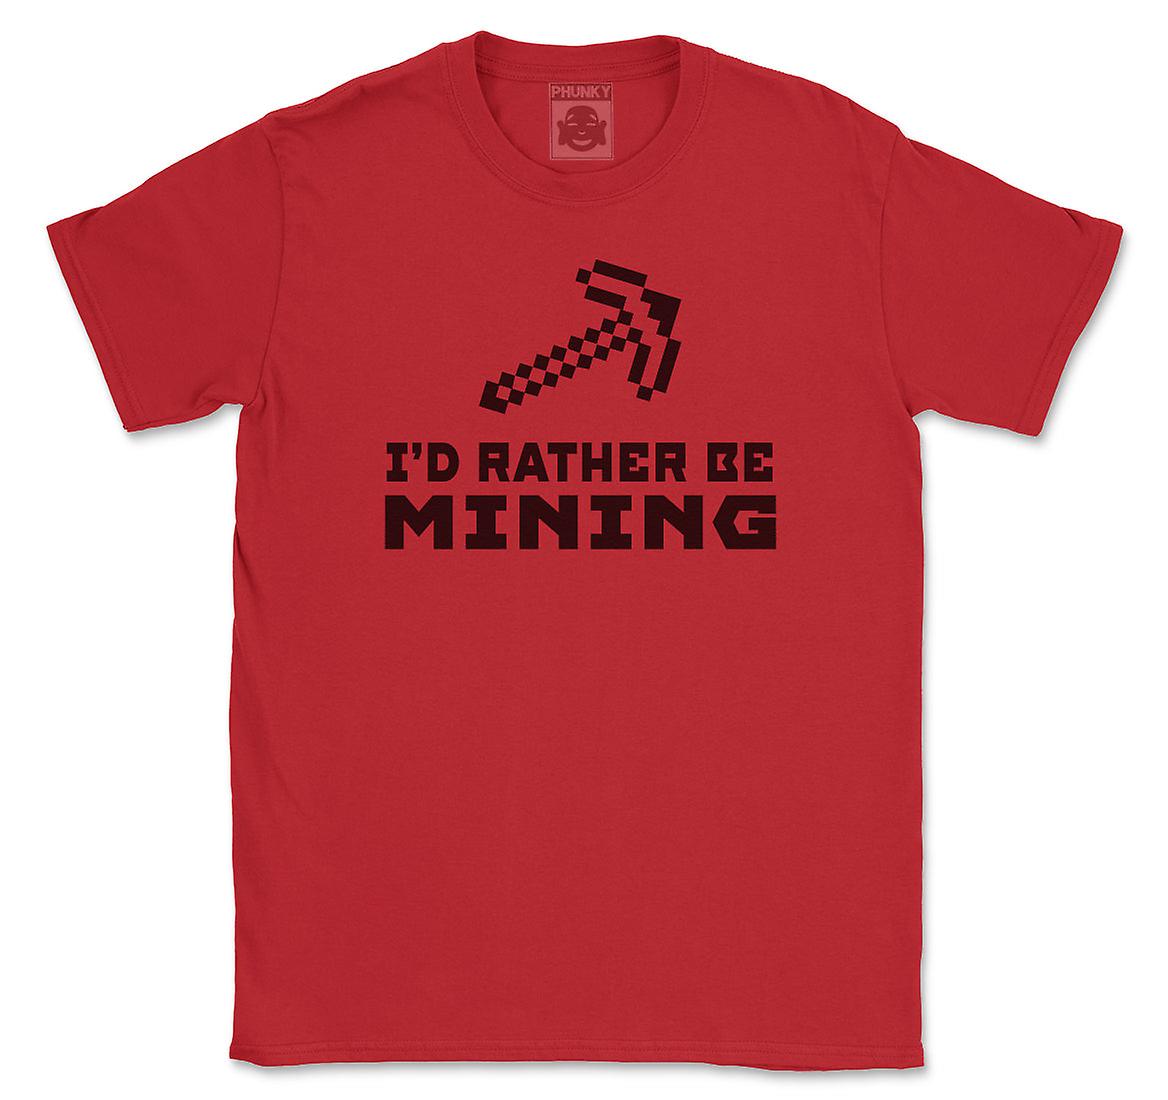 Seven Dwarfs Mining Co. Women's T-Shirt | T shirts for women, Shirts, T shirt